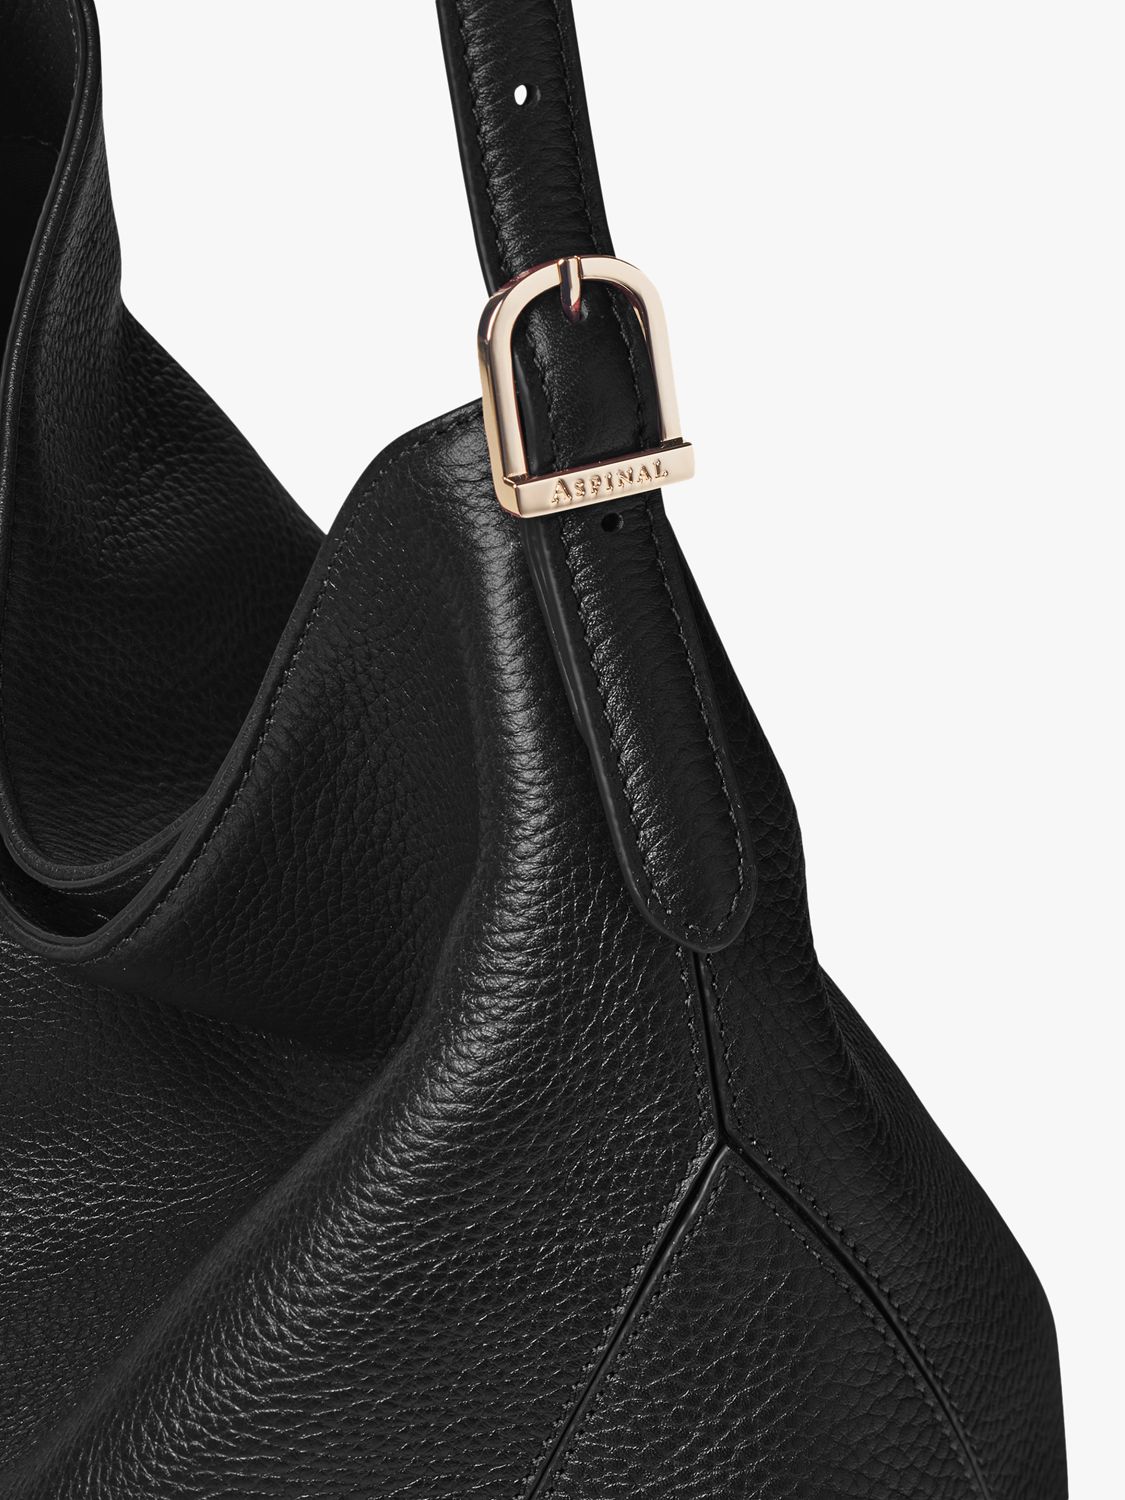 Aspinal of London Pebble Leather Hobo Shoulder Bag, Black